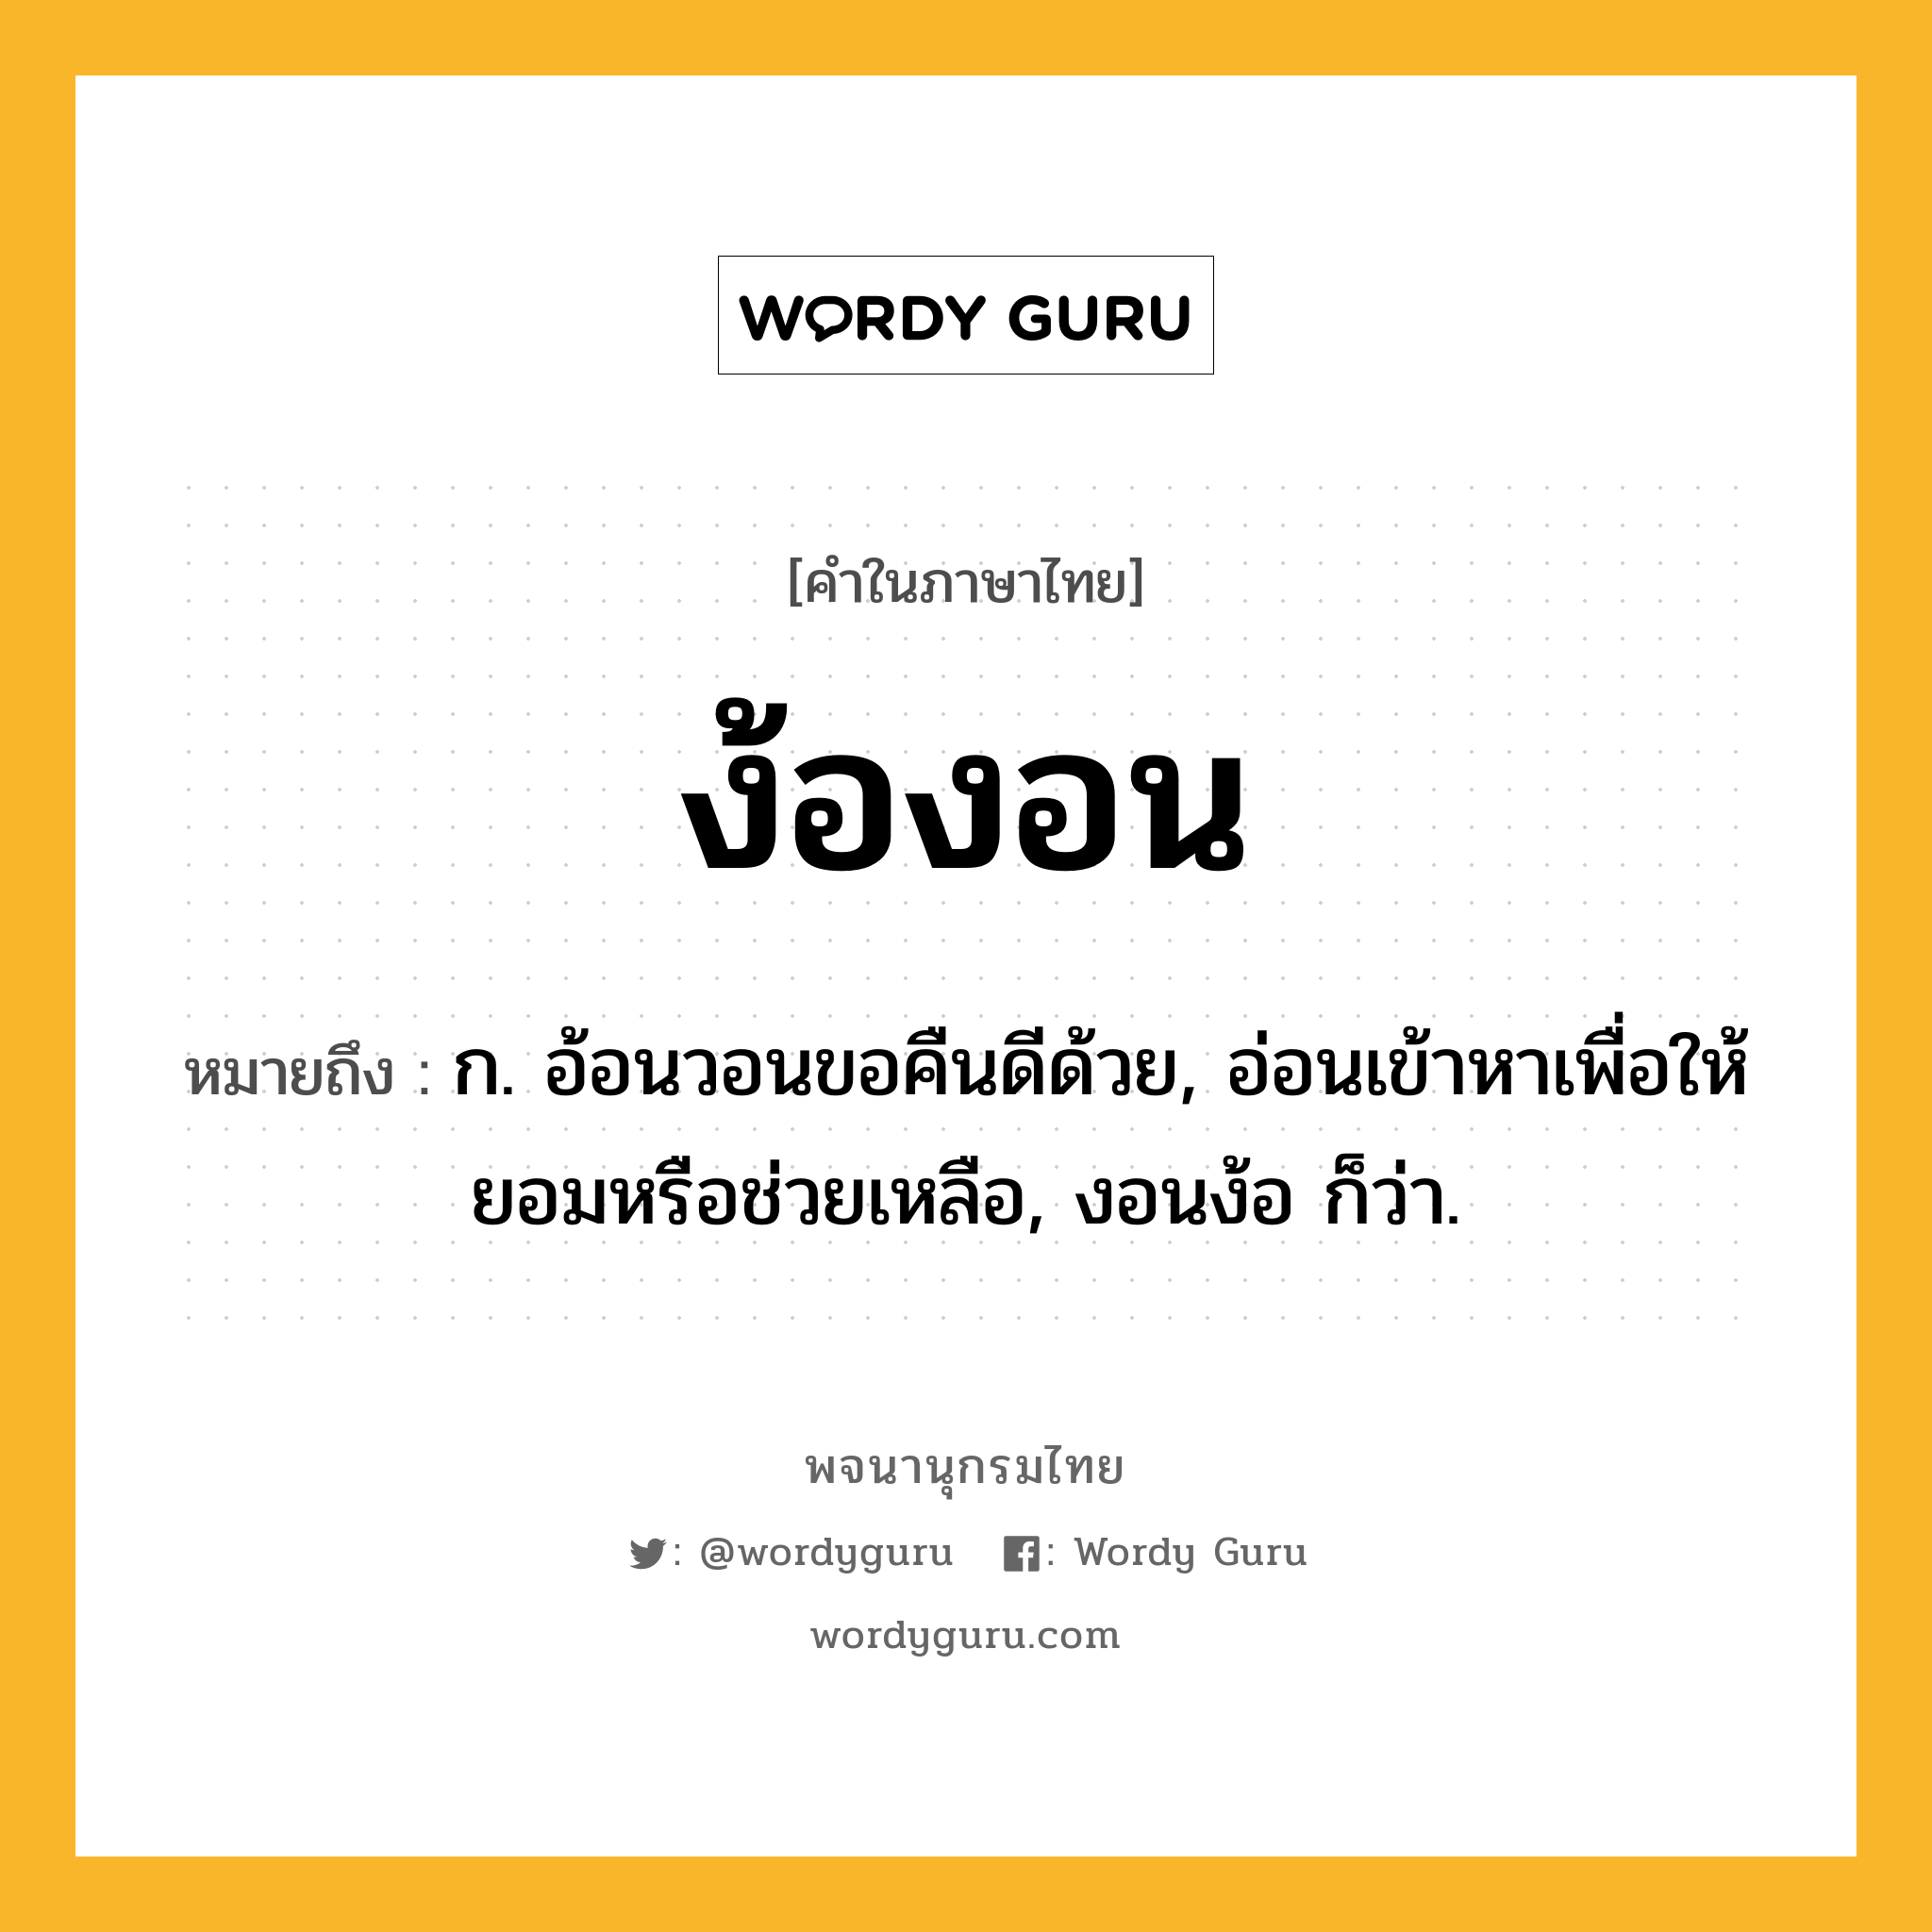 ง้องอน หมายถึงอะไร?, คำในภาษาไทย ง้องอน หมายถึง ก. อ้อนวอนขอคืนดีด้วย, อ่อนเข้าหาเพื่อให้ยอมหรือช่วยเหลือ, งอนง้อ ก็ว่า.